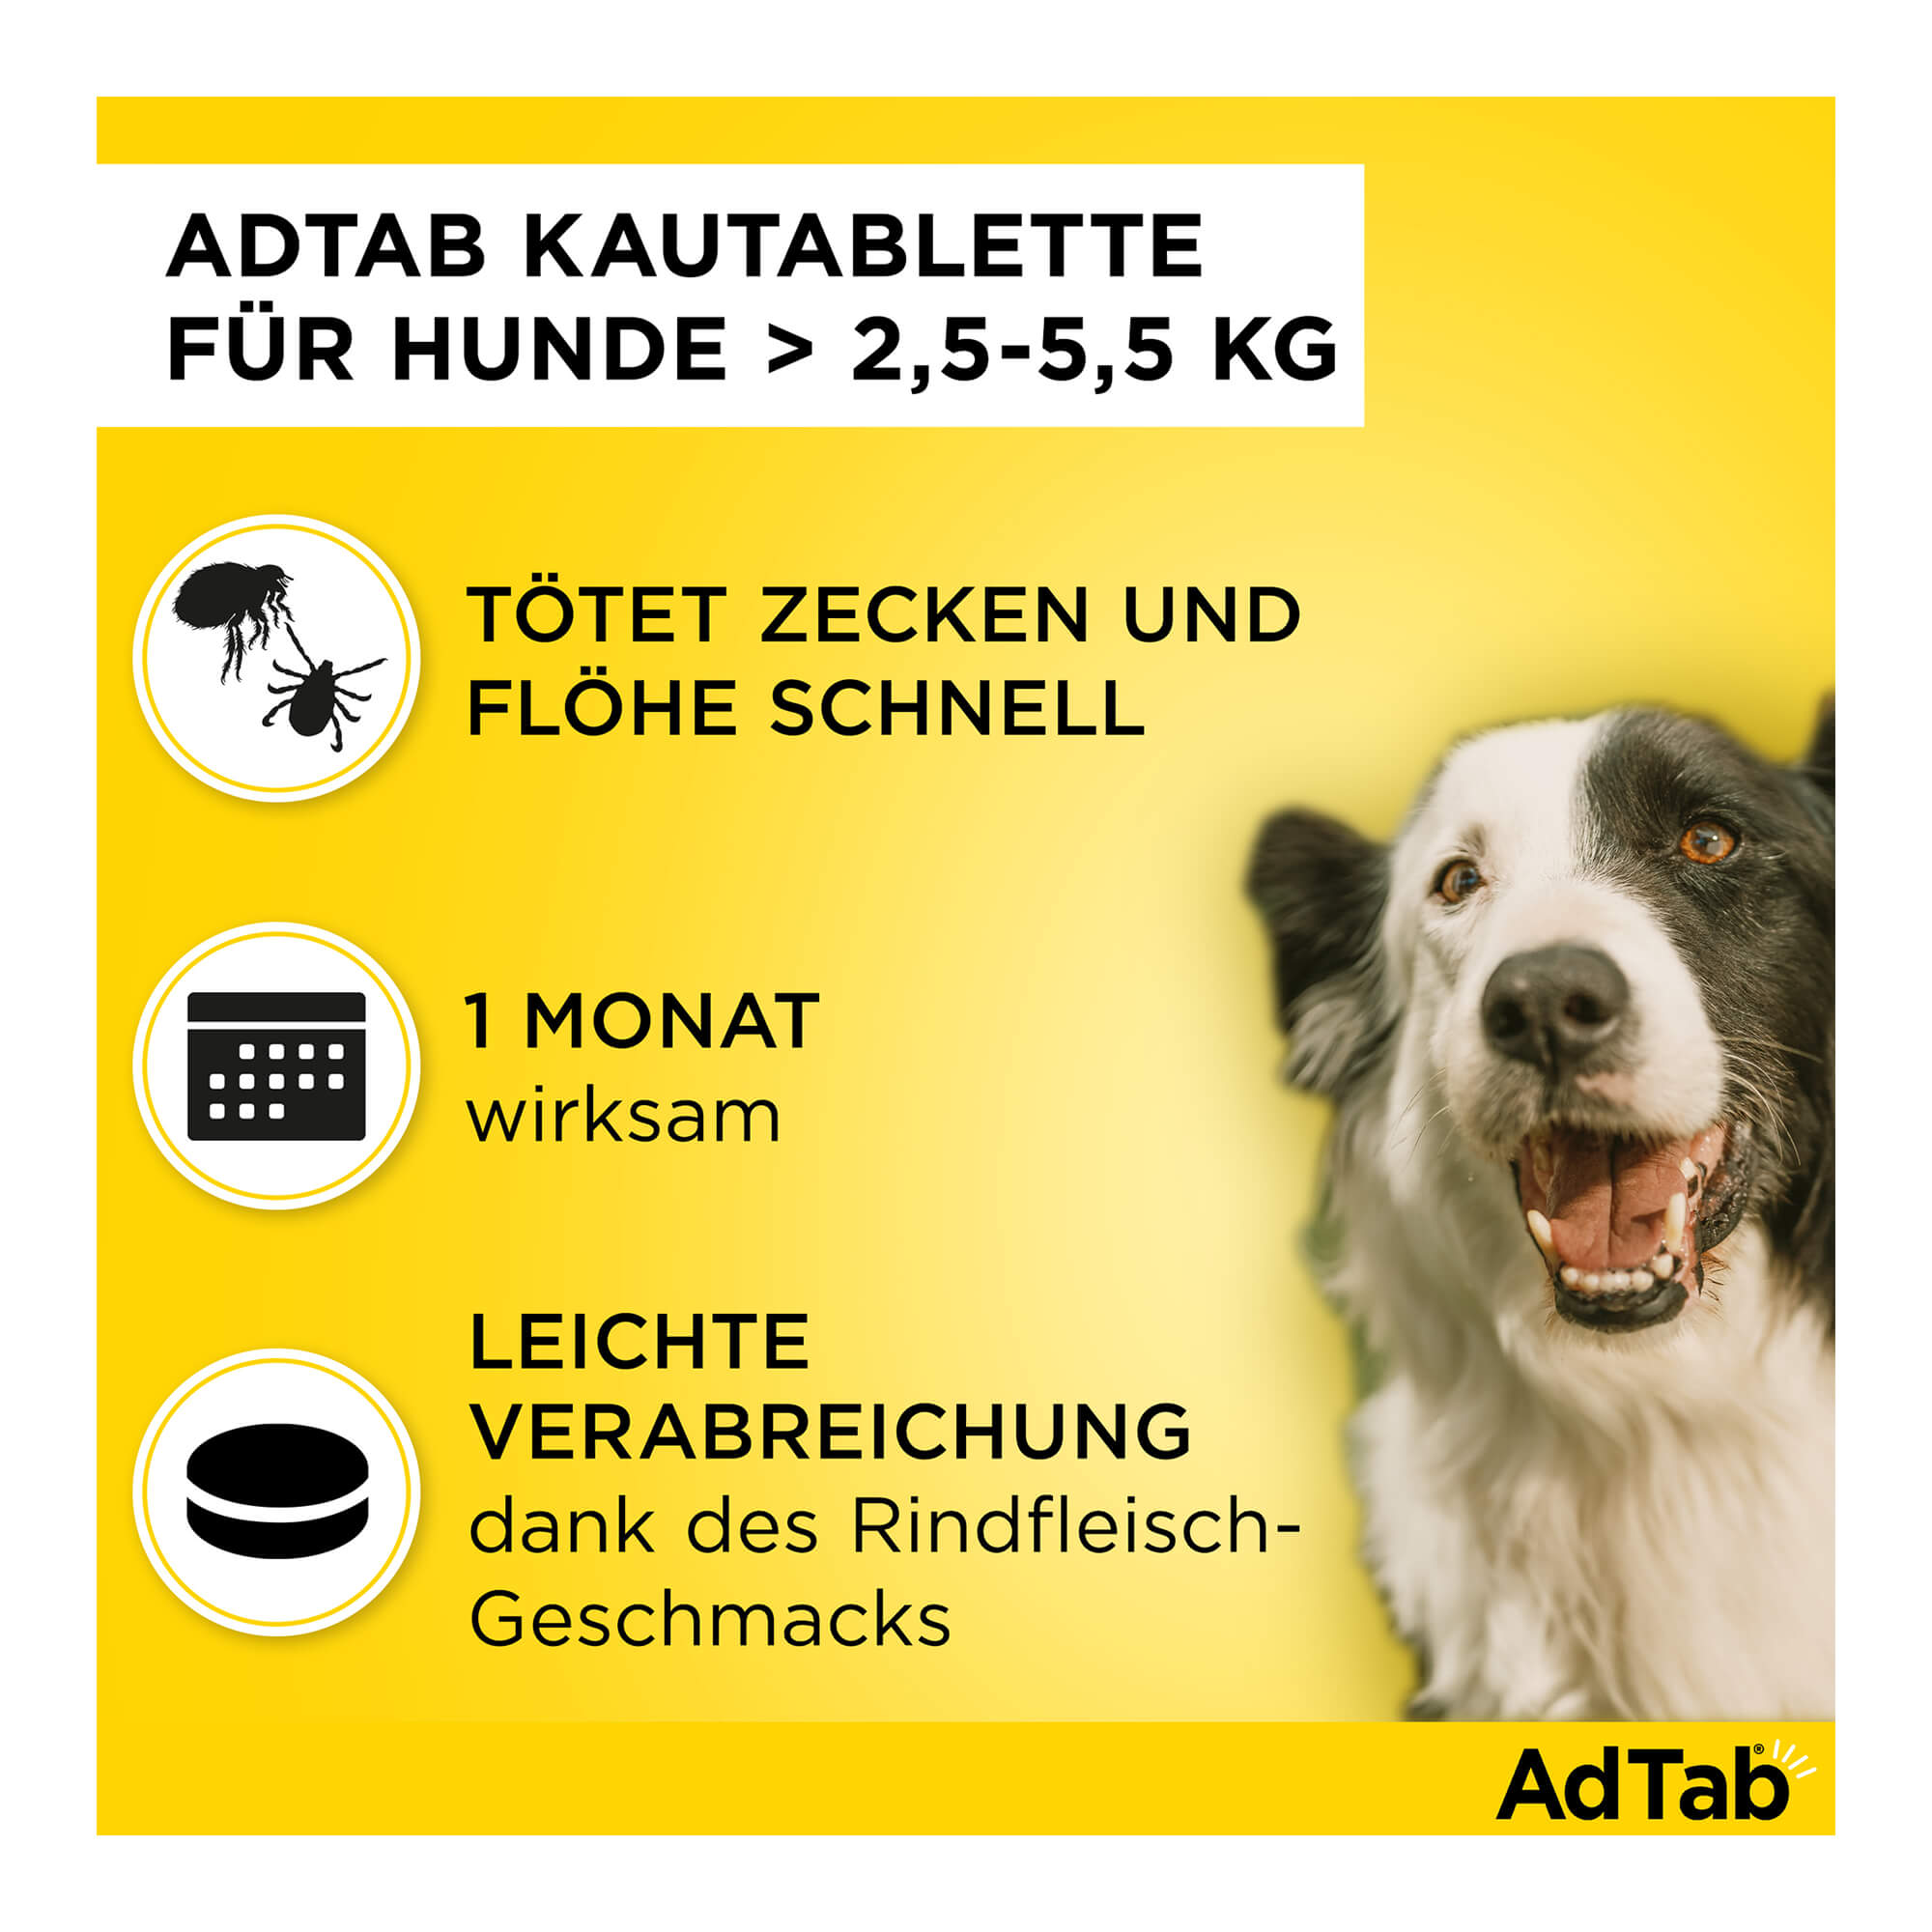 AdTab Kautabletten für Hunde über 2,5 bis 5,5 kg Merkmale